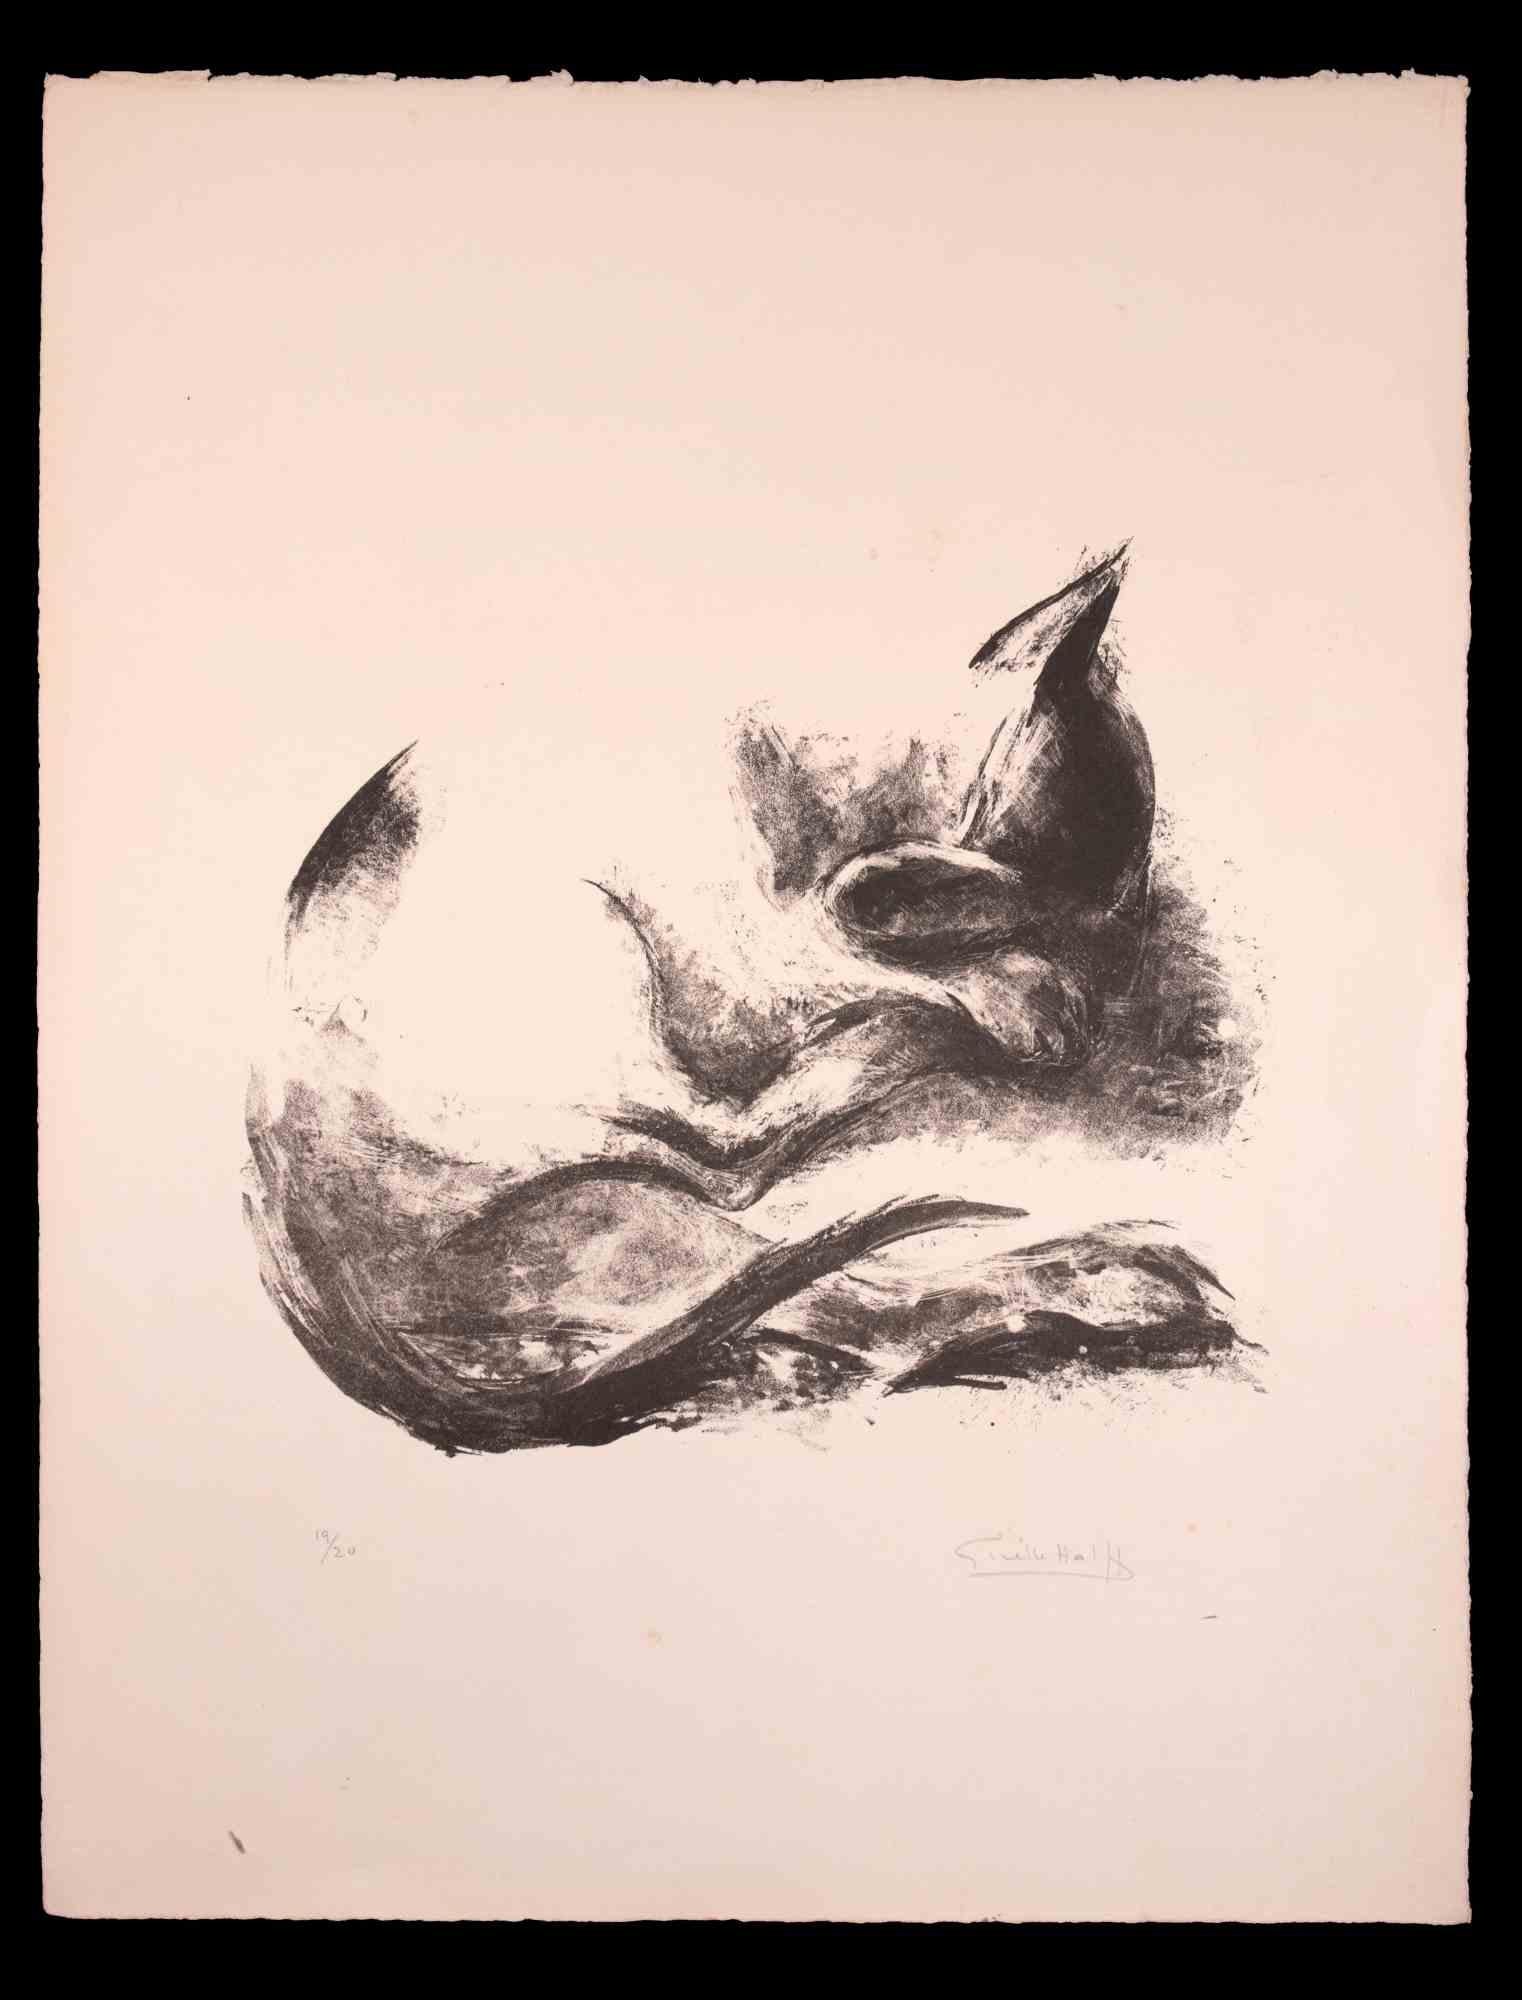 Le Chat est une lithographie sur papier ivoire réalisée par Giselle Halff en 1950 ca.

Signé à la main au crayon en bas à droite.

Numéroté. Edition, 19/20.

Bon état, légères rousseurs.

Le chat est représenté par des traits expressifs habiles,